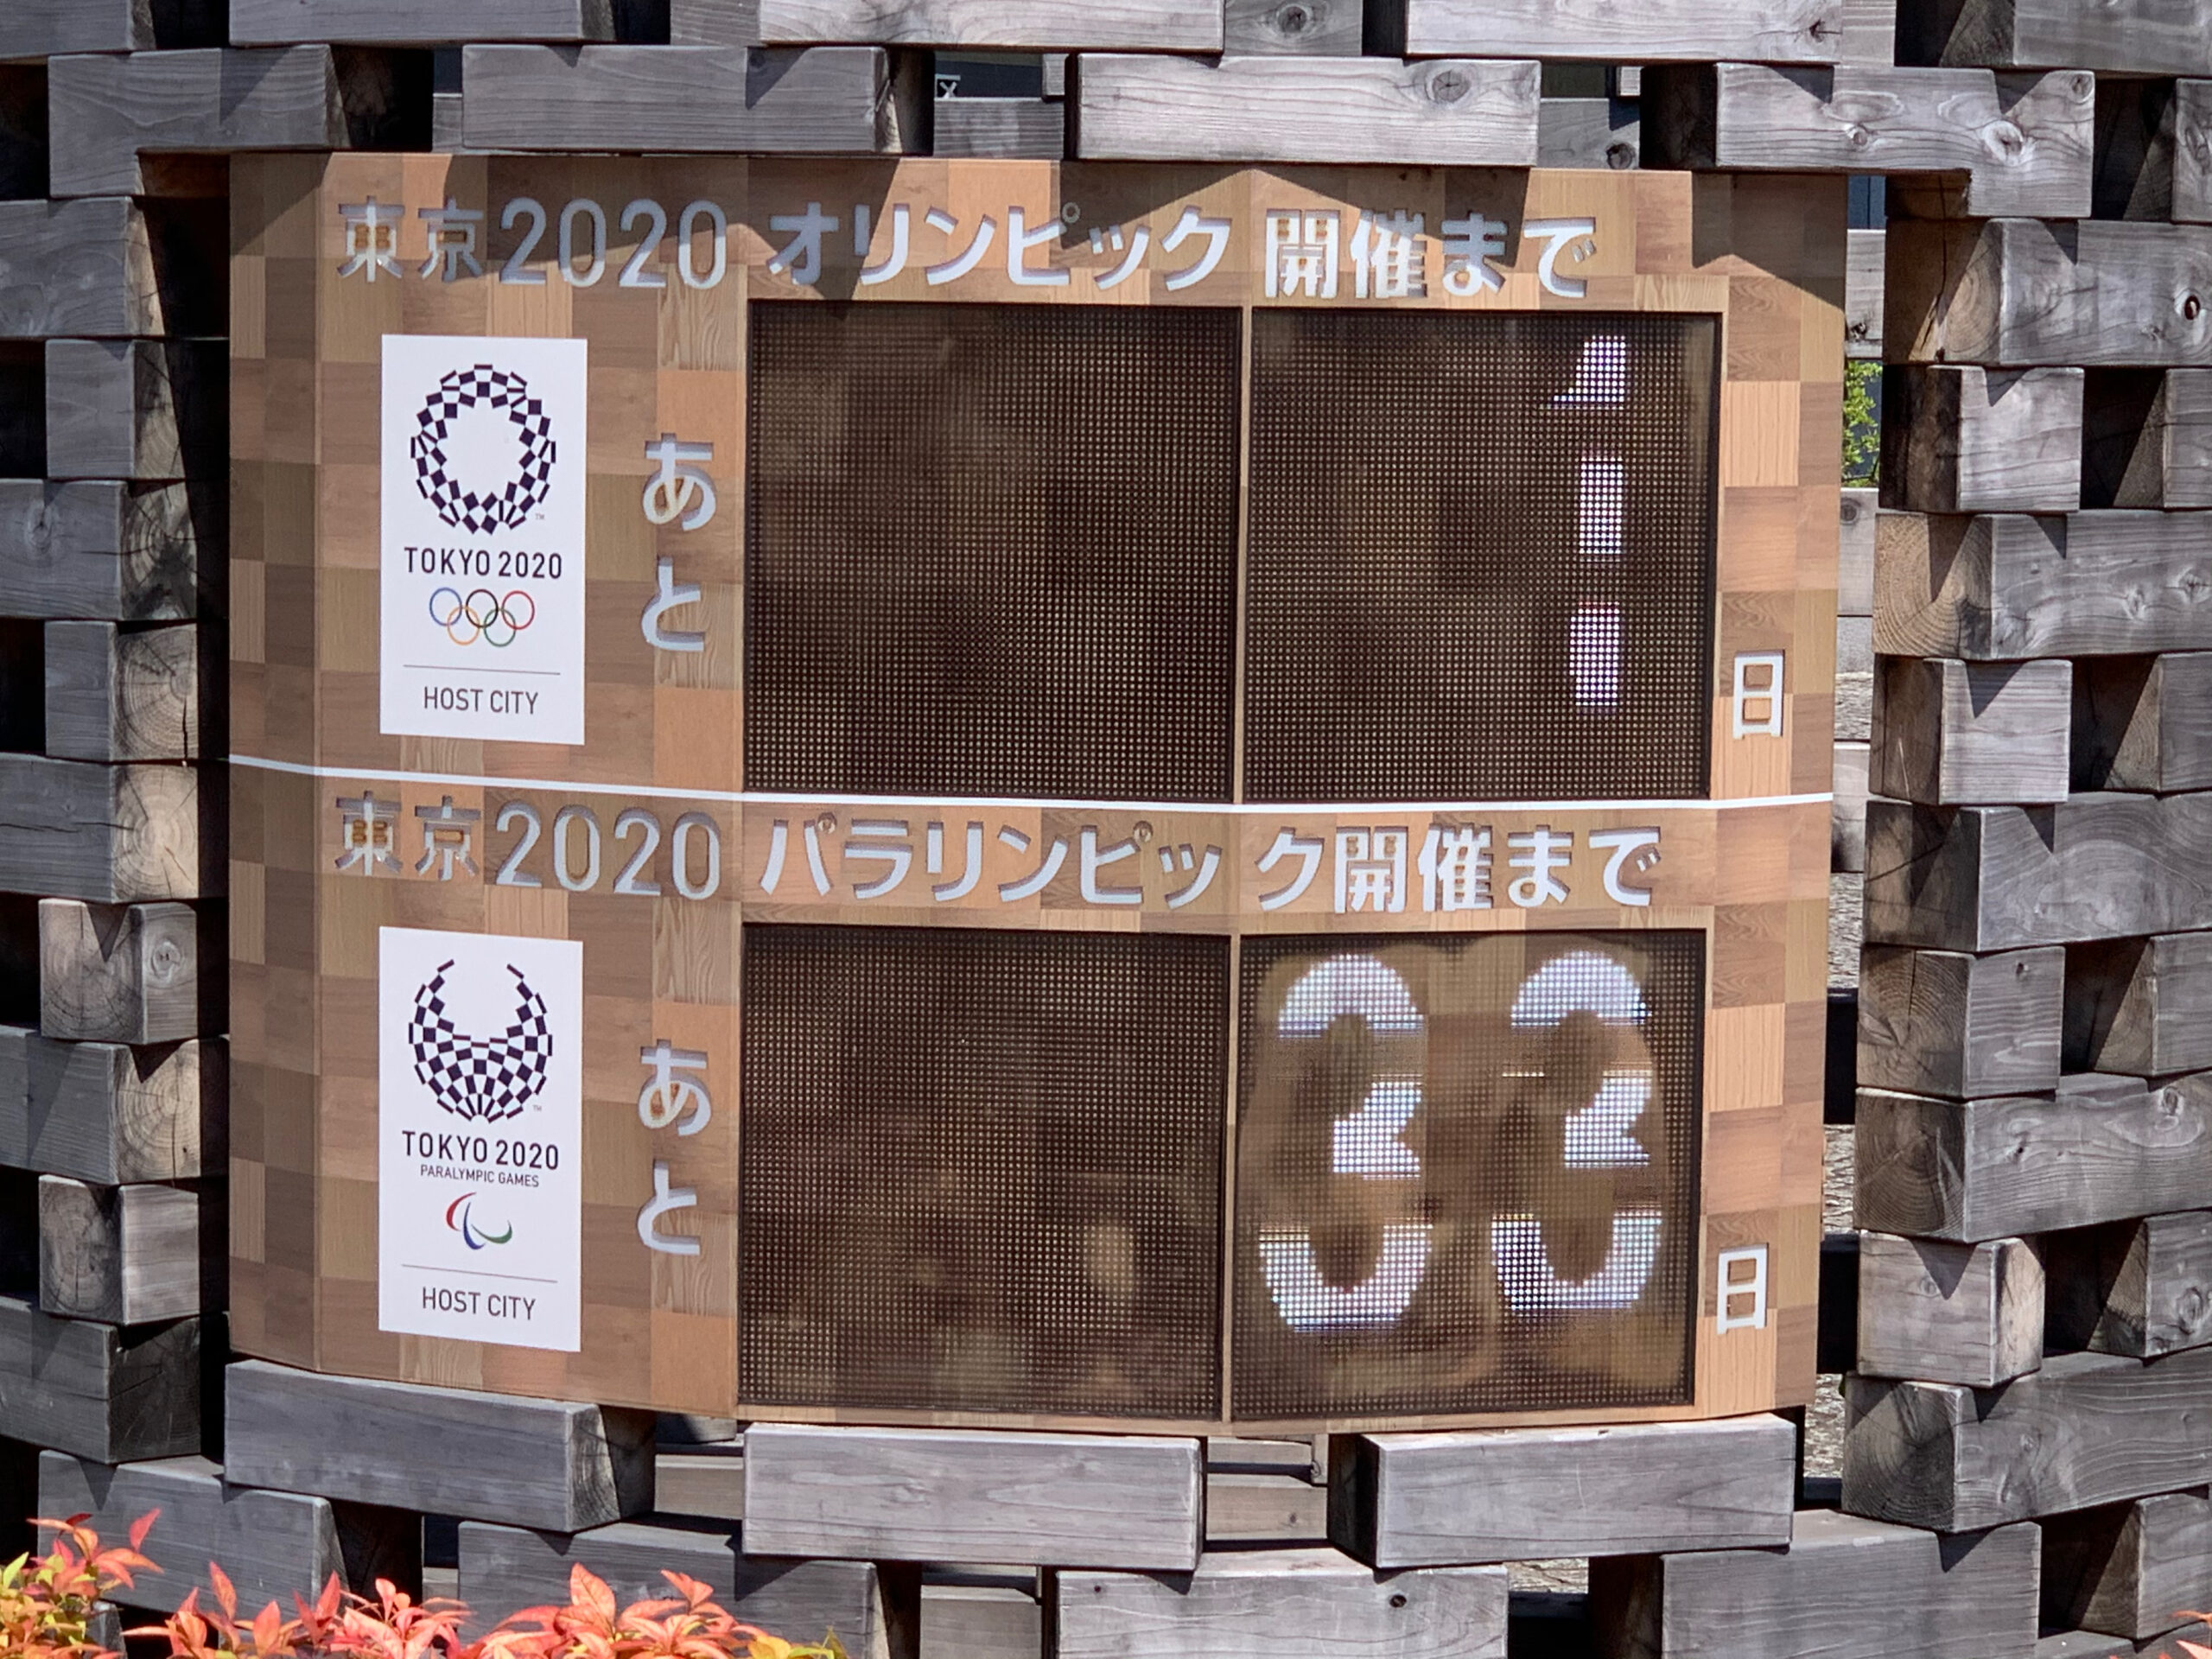 東京2020オリンピック開催日前日のランは江東区横十間川親水公園のコースを走りました